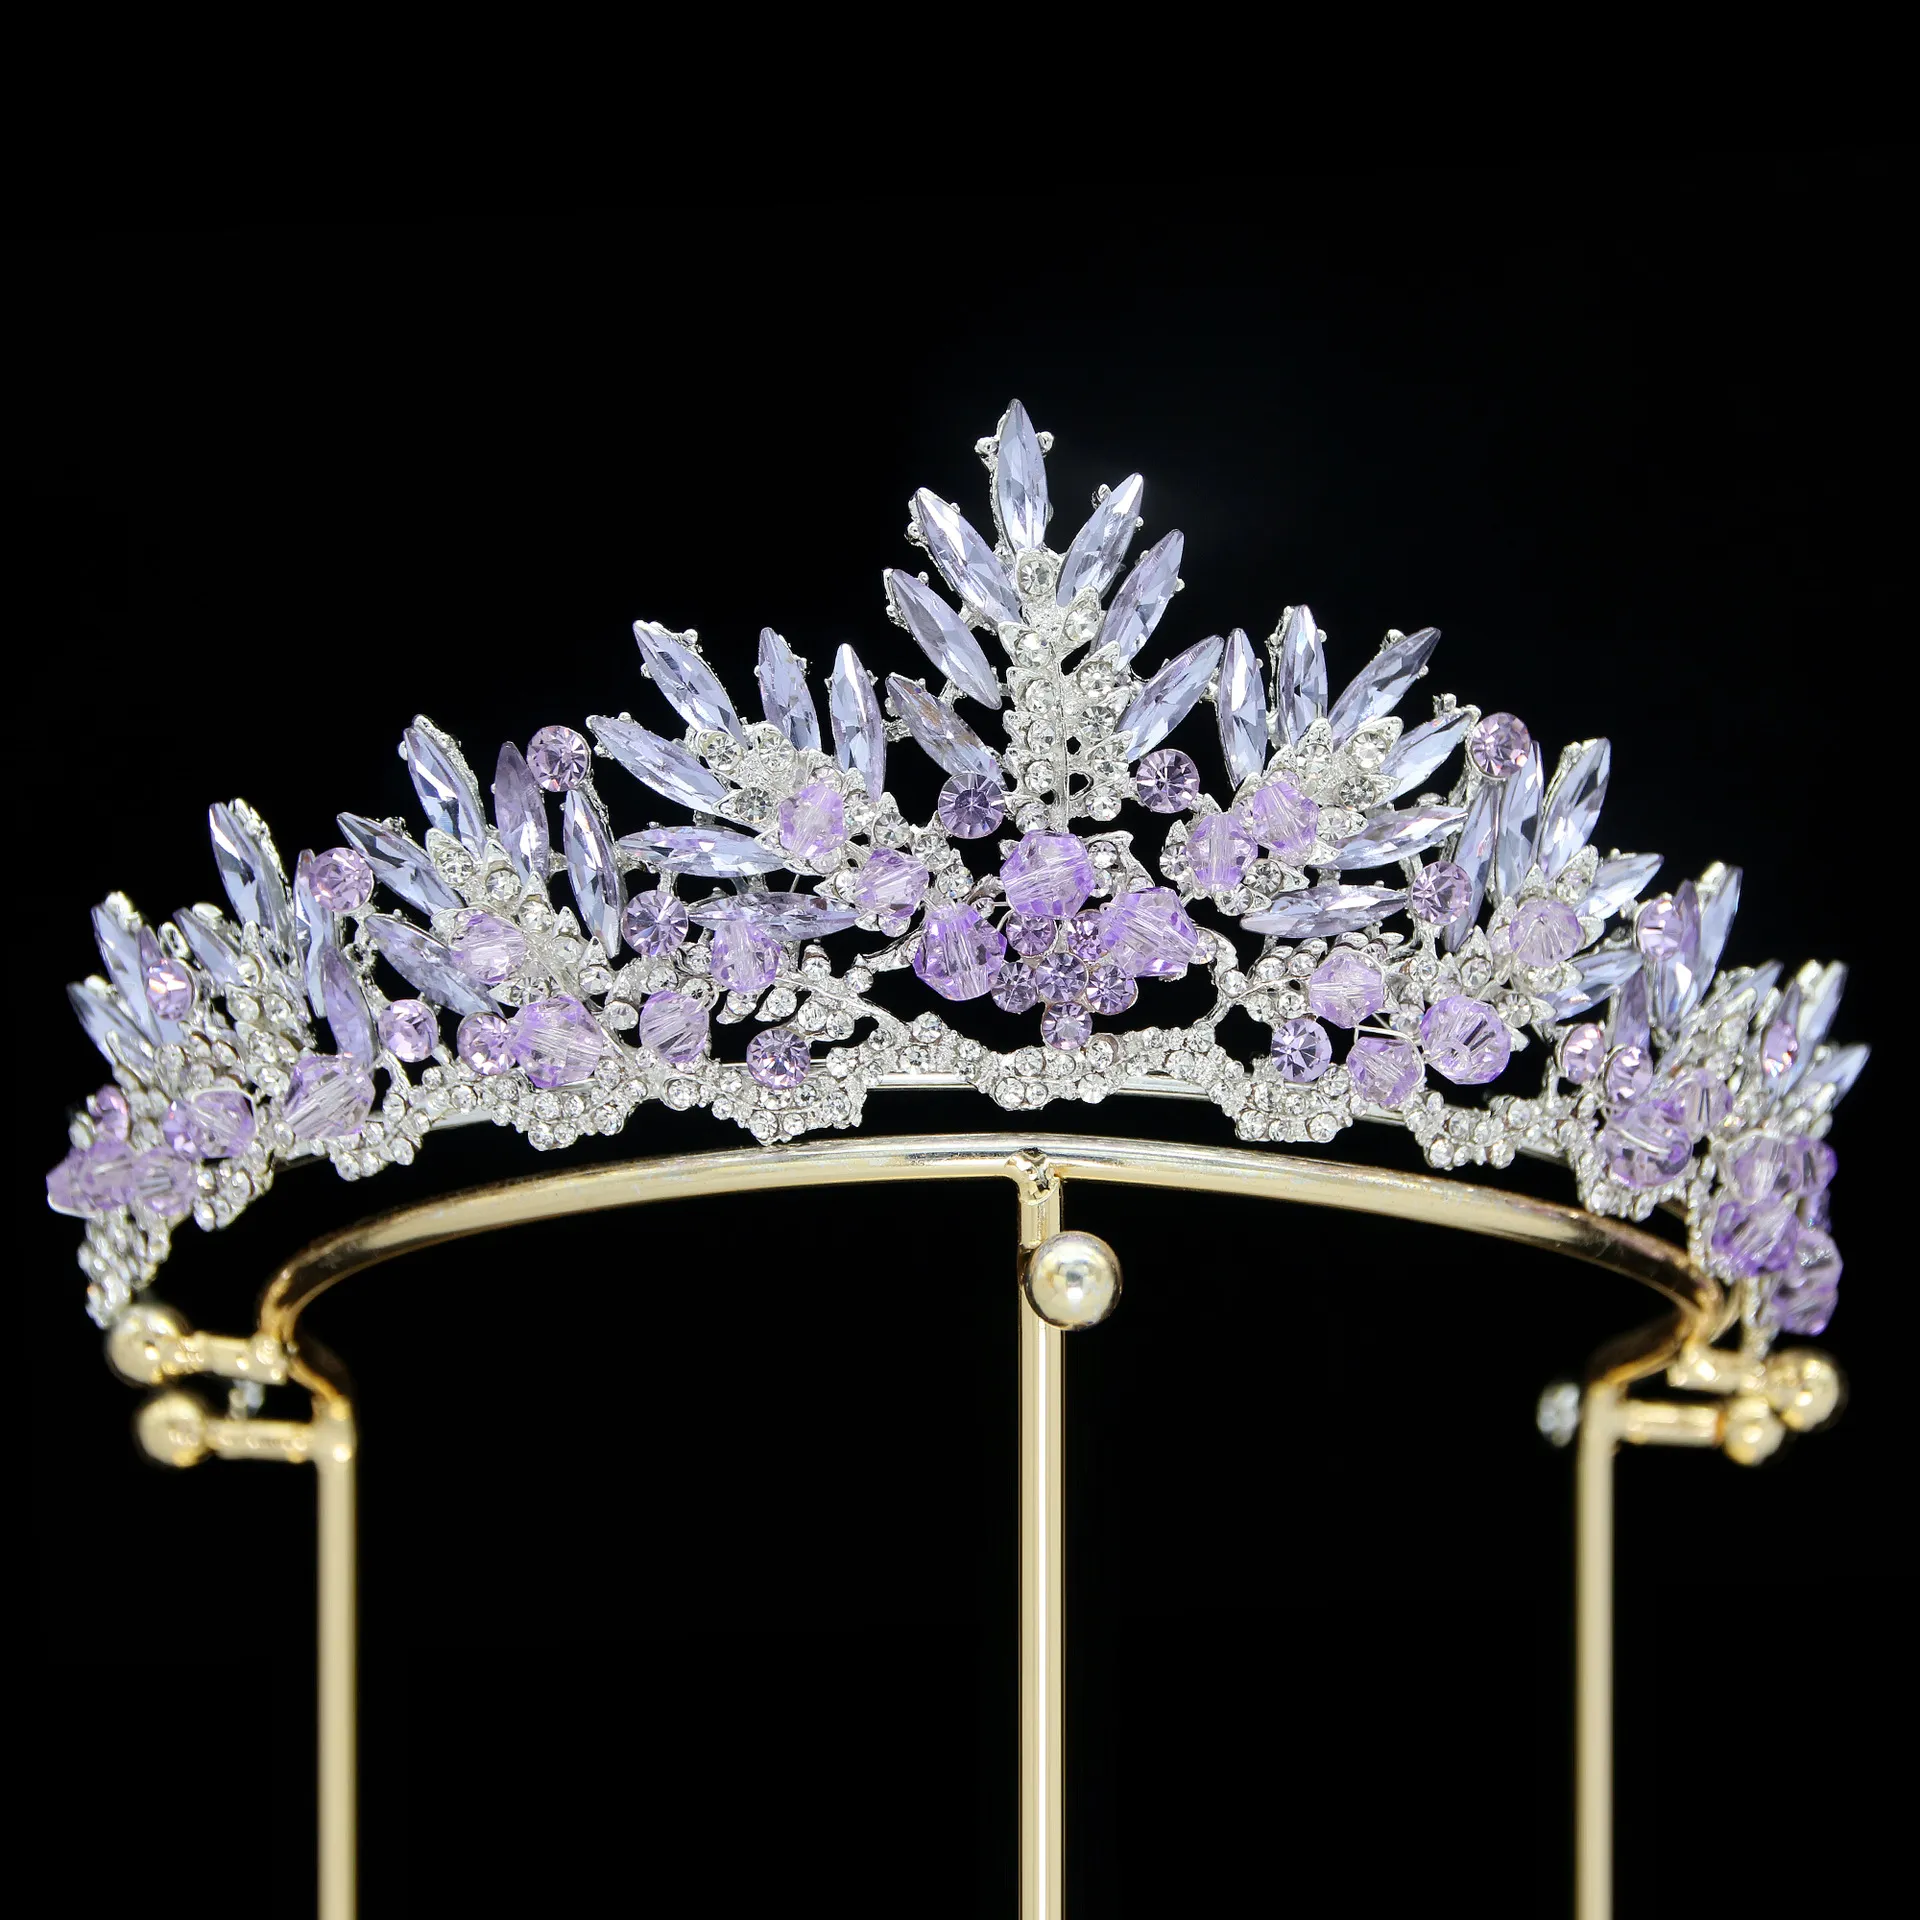 Åtta färger kristaller brud tiaror för bröllop, prinsessan kronor engagemang tiara huvudstycke för kvinnor drottning zc pannband spbh2302